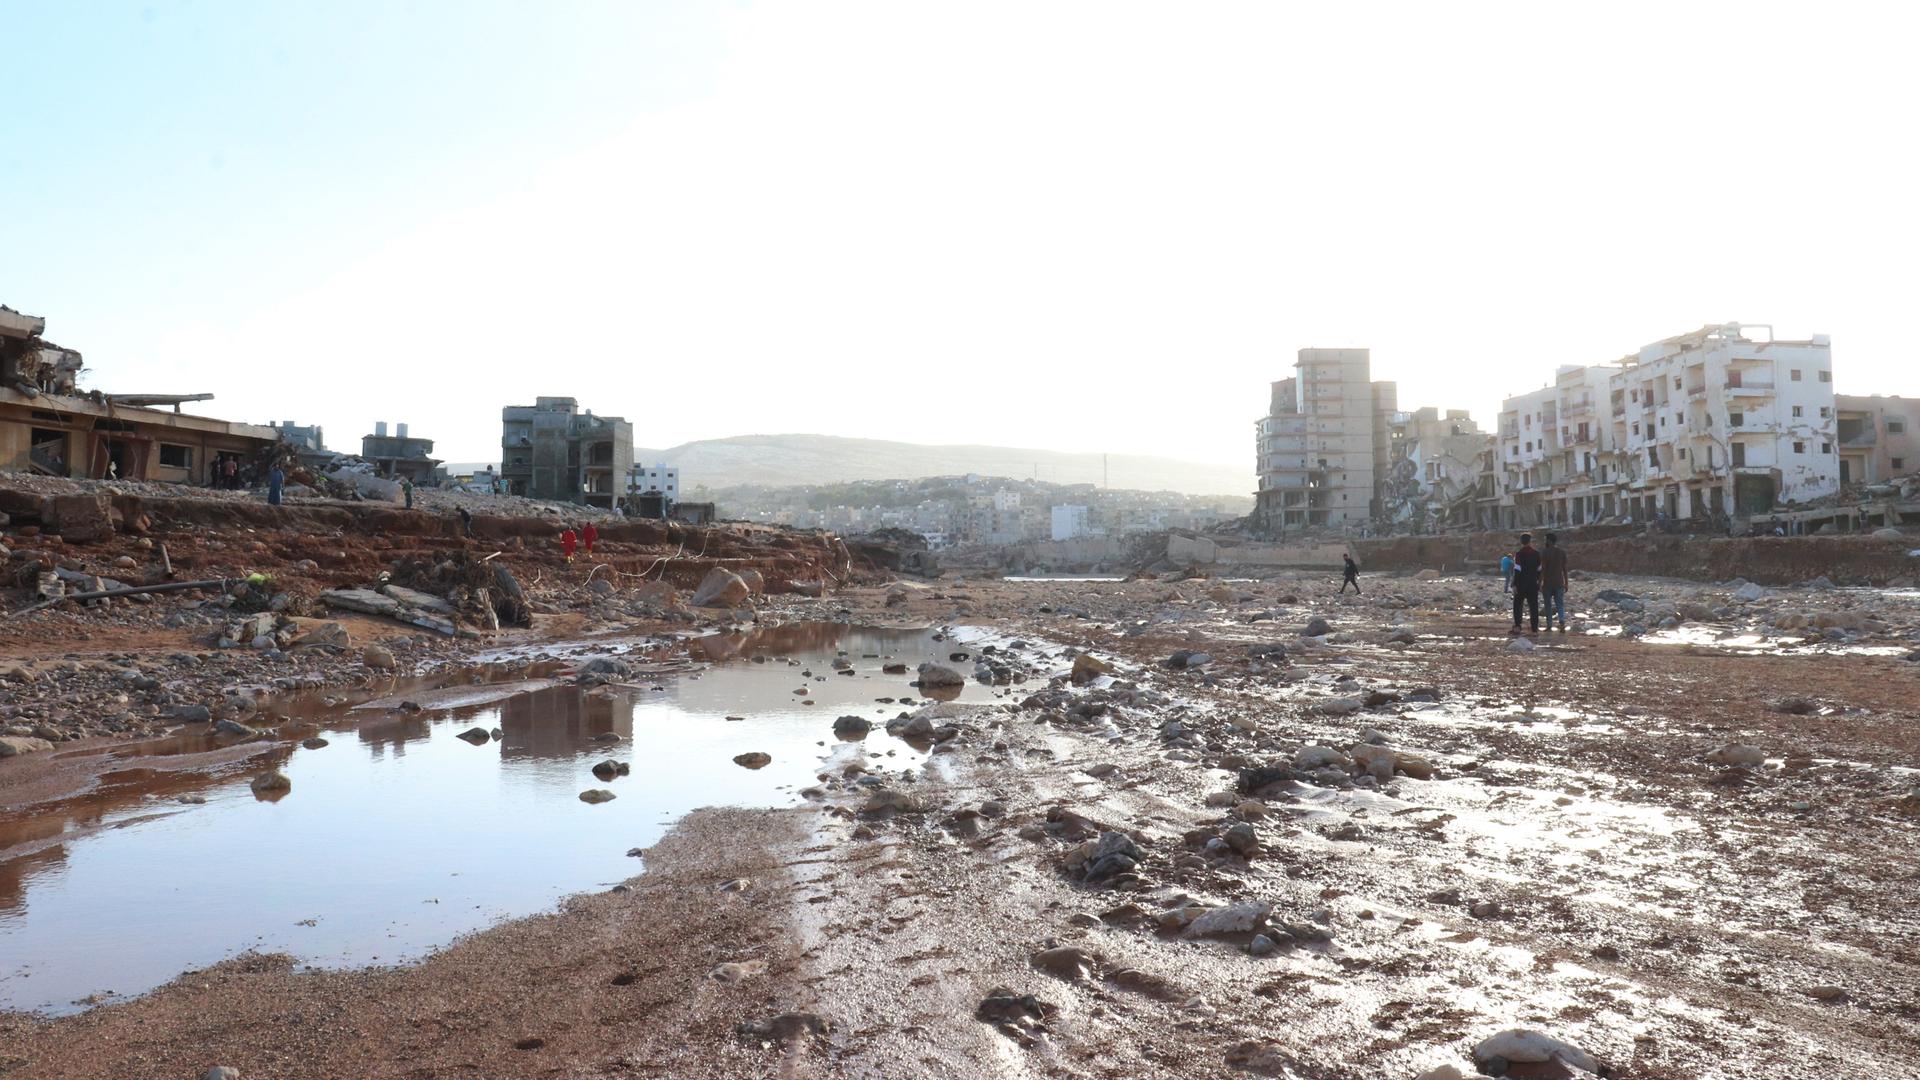 Blick auf eine verschlammte Fläche zwischen Häusern in der libyischen Stadt Darna.